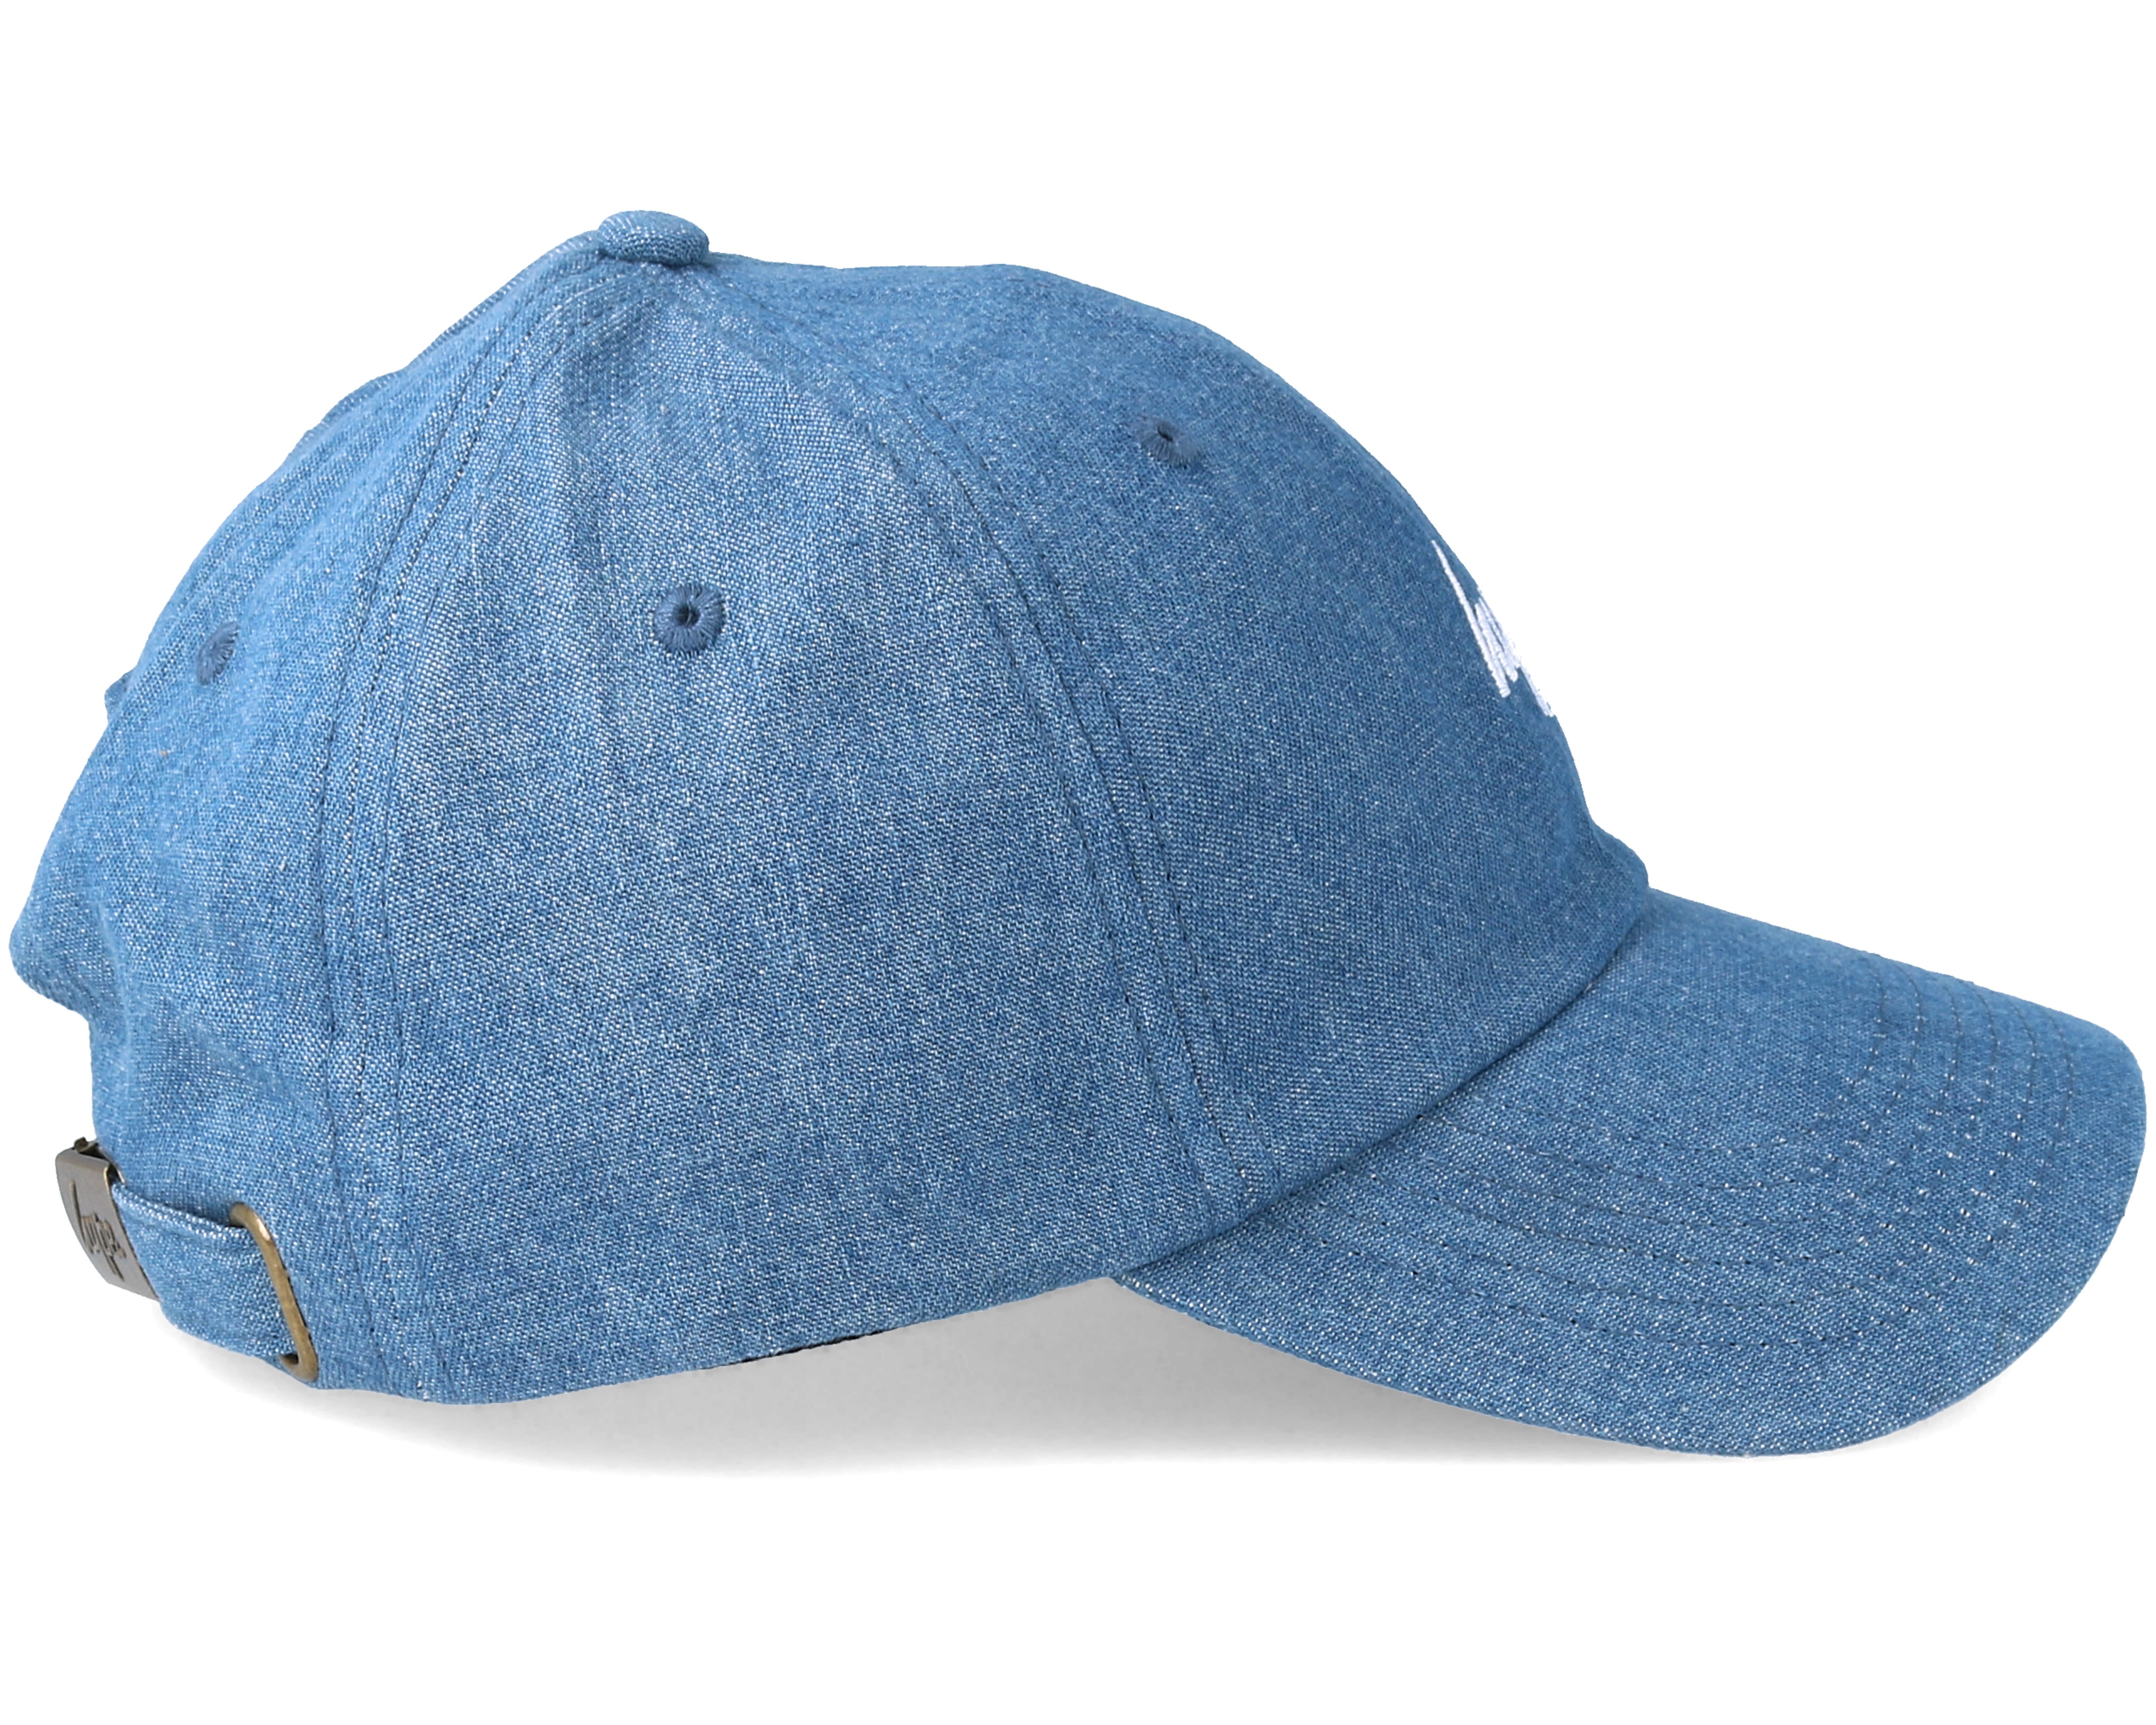 Denim Dad Hat Blue Adjustable - Hype caps | Hatstore.co.uk